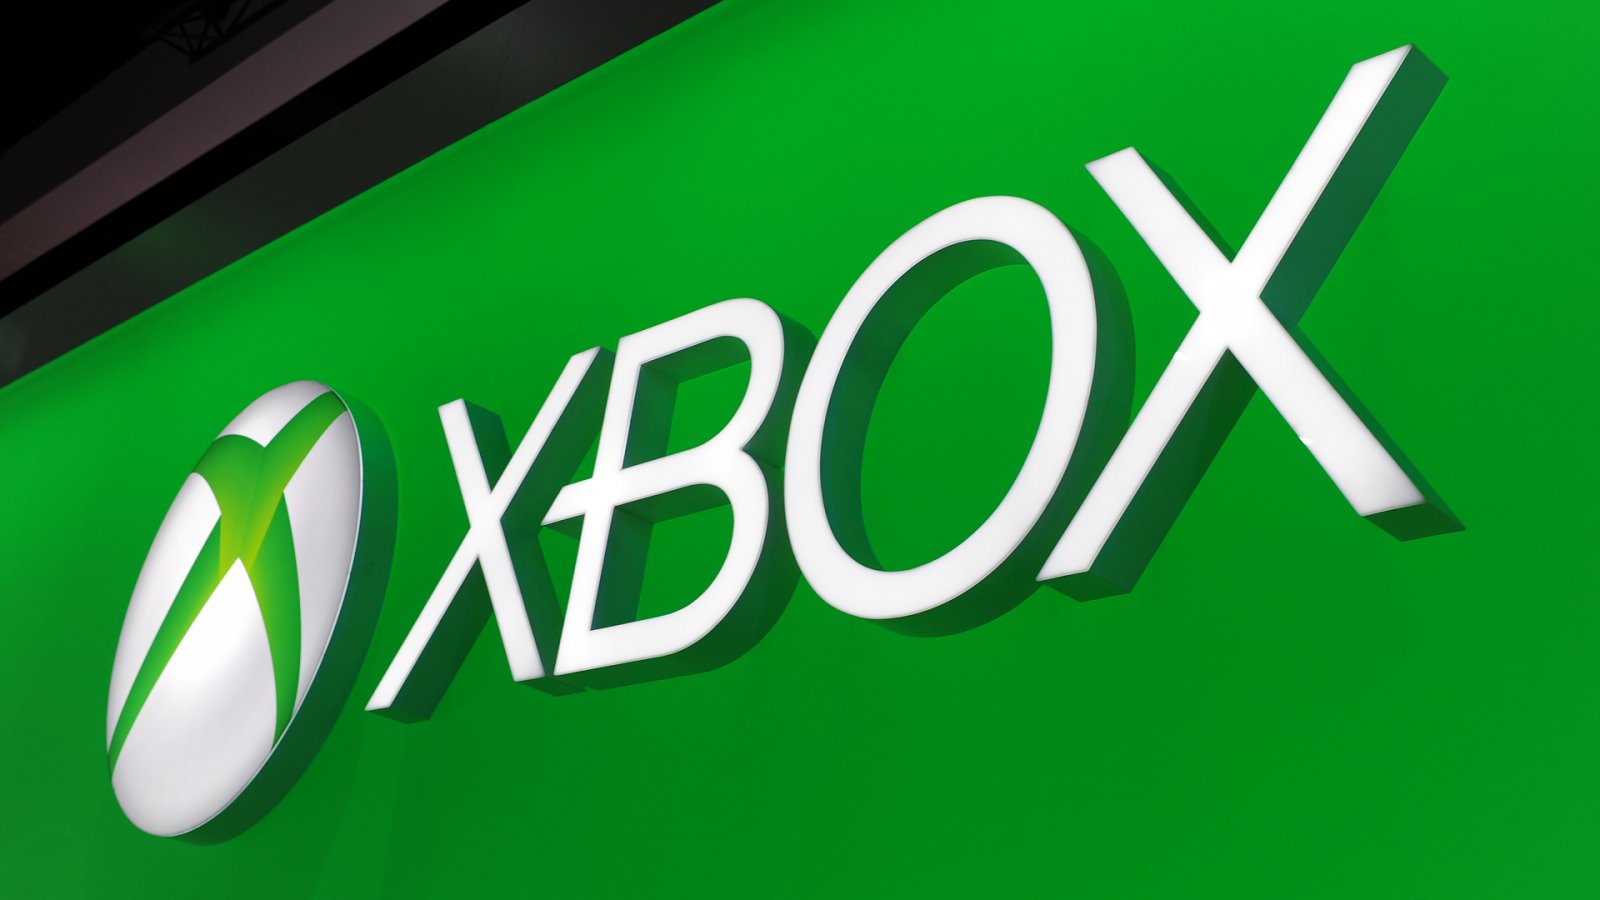 Abbiamo intervistato Jerret West, il capo del marketing di Xbox